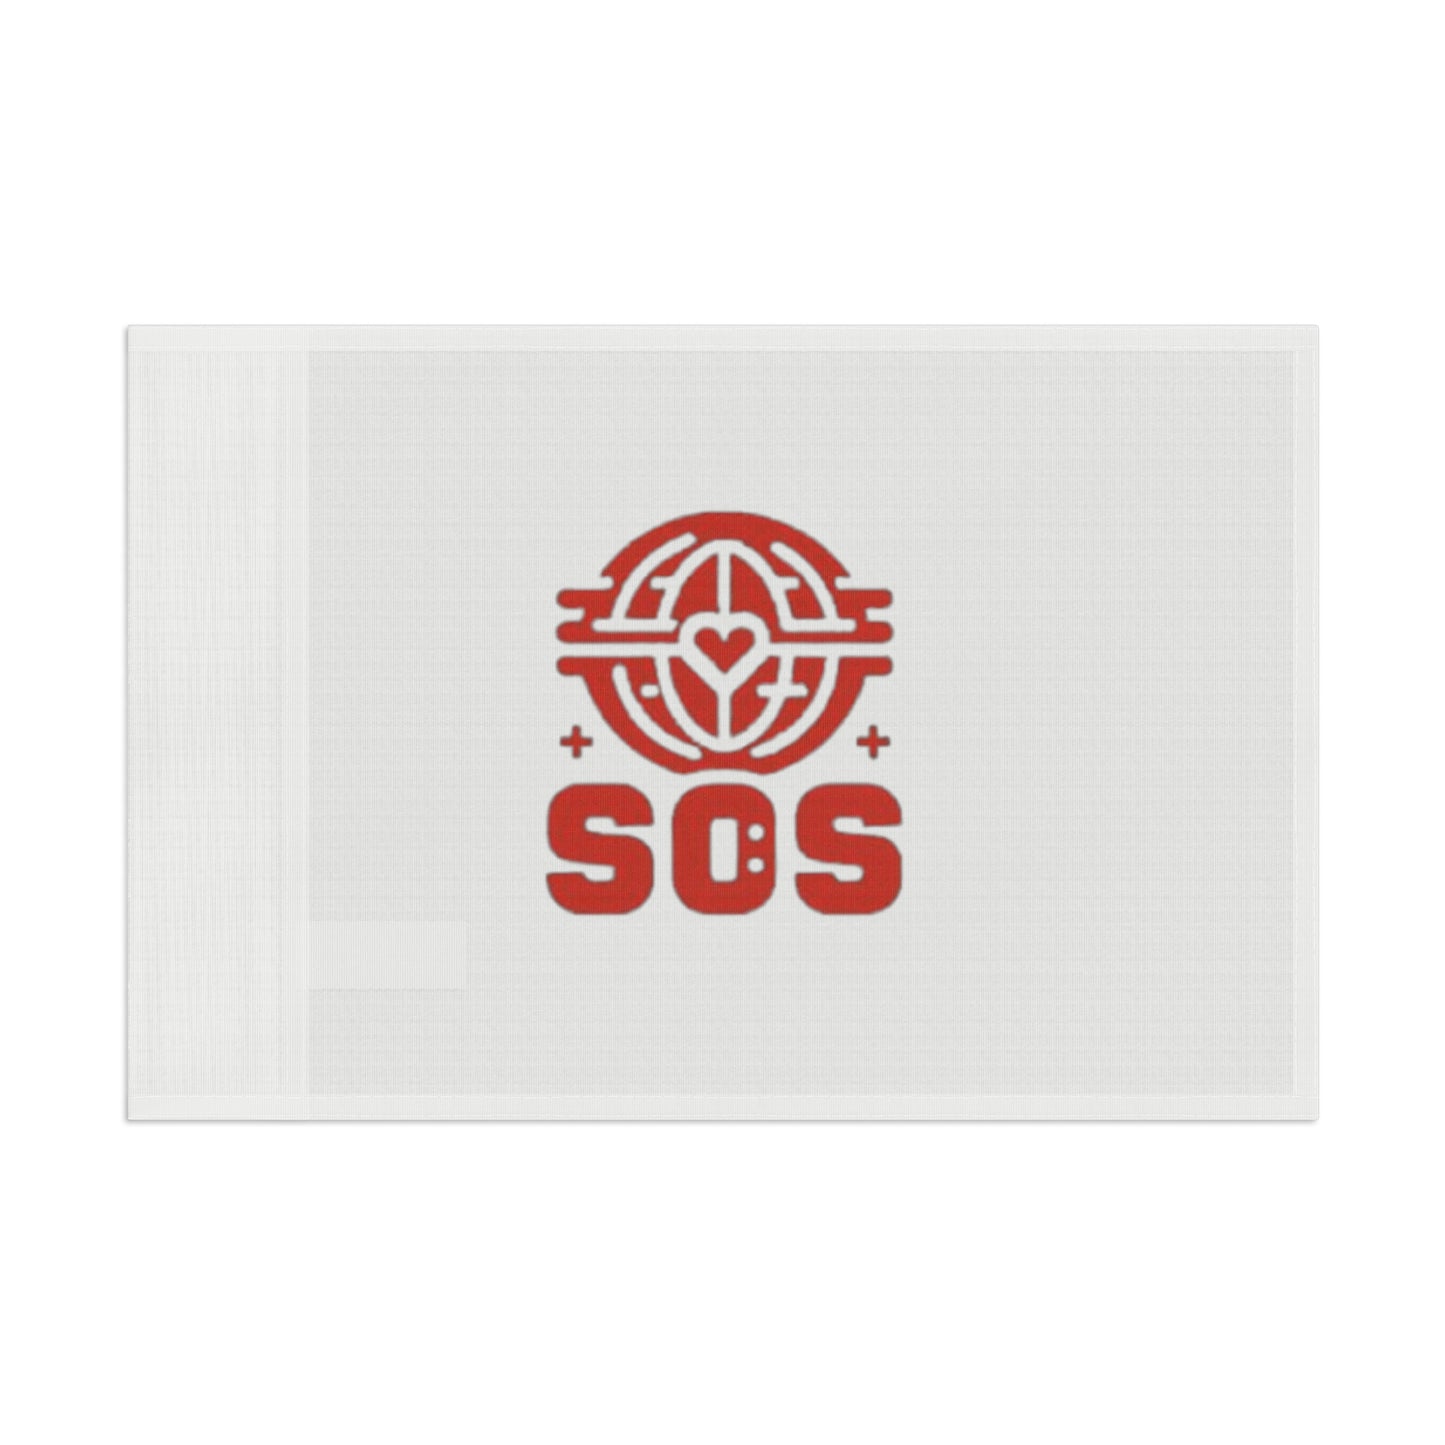 '' Drapeau de Solidarite SOS''